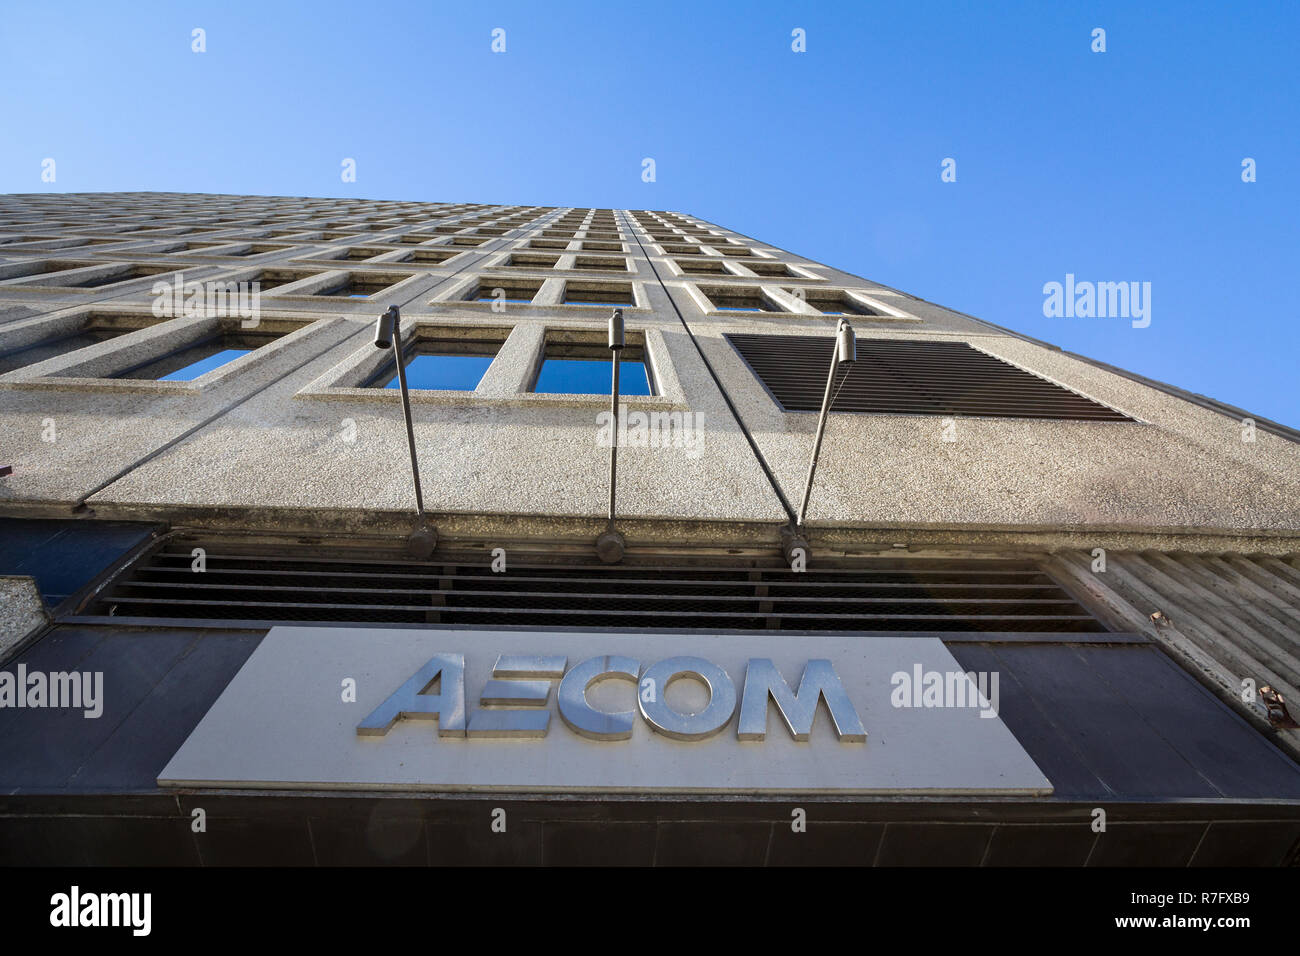 aecom building